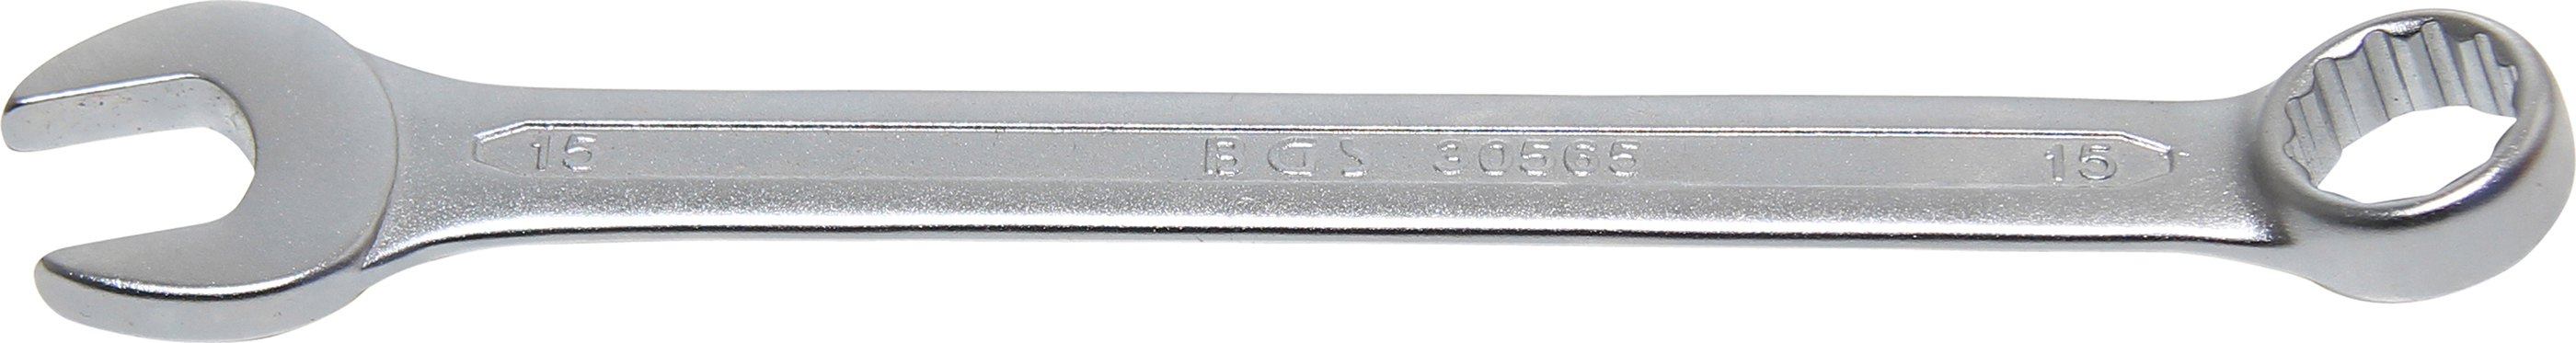 BGS 30565 Cheie combinata, 15 mm